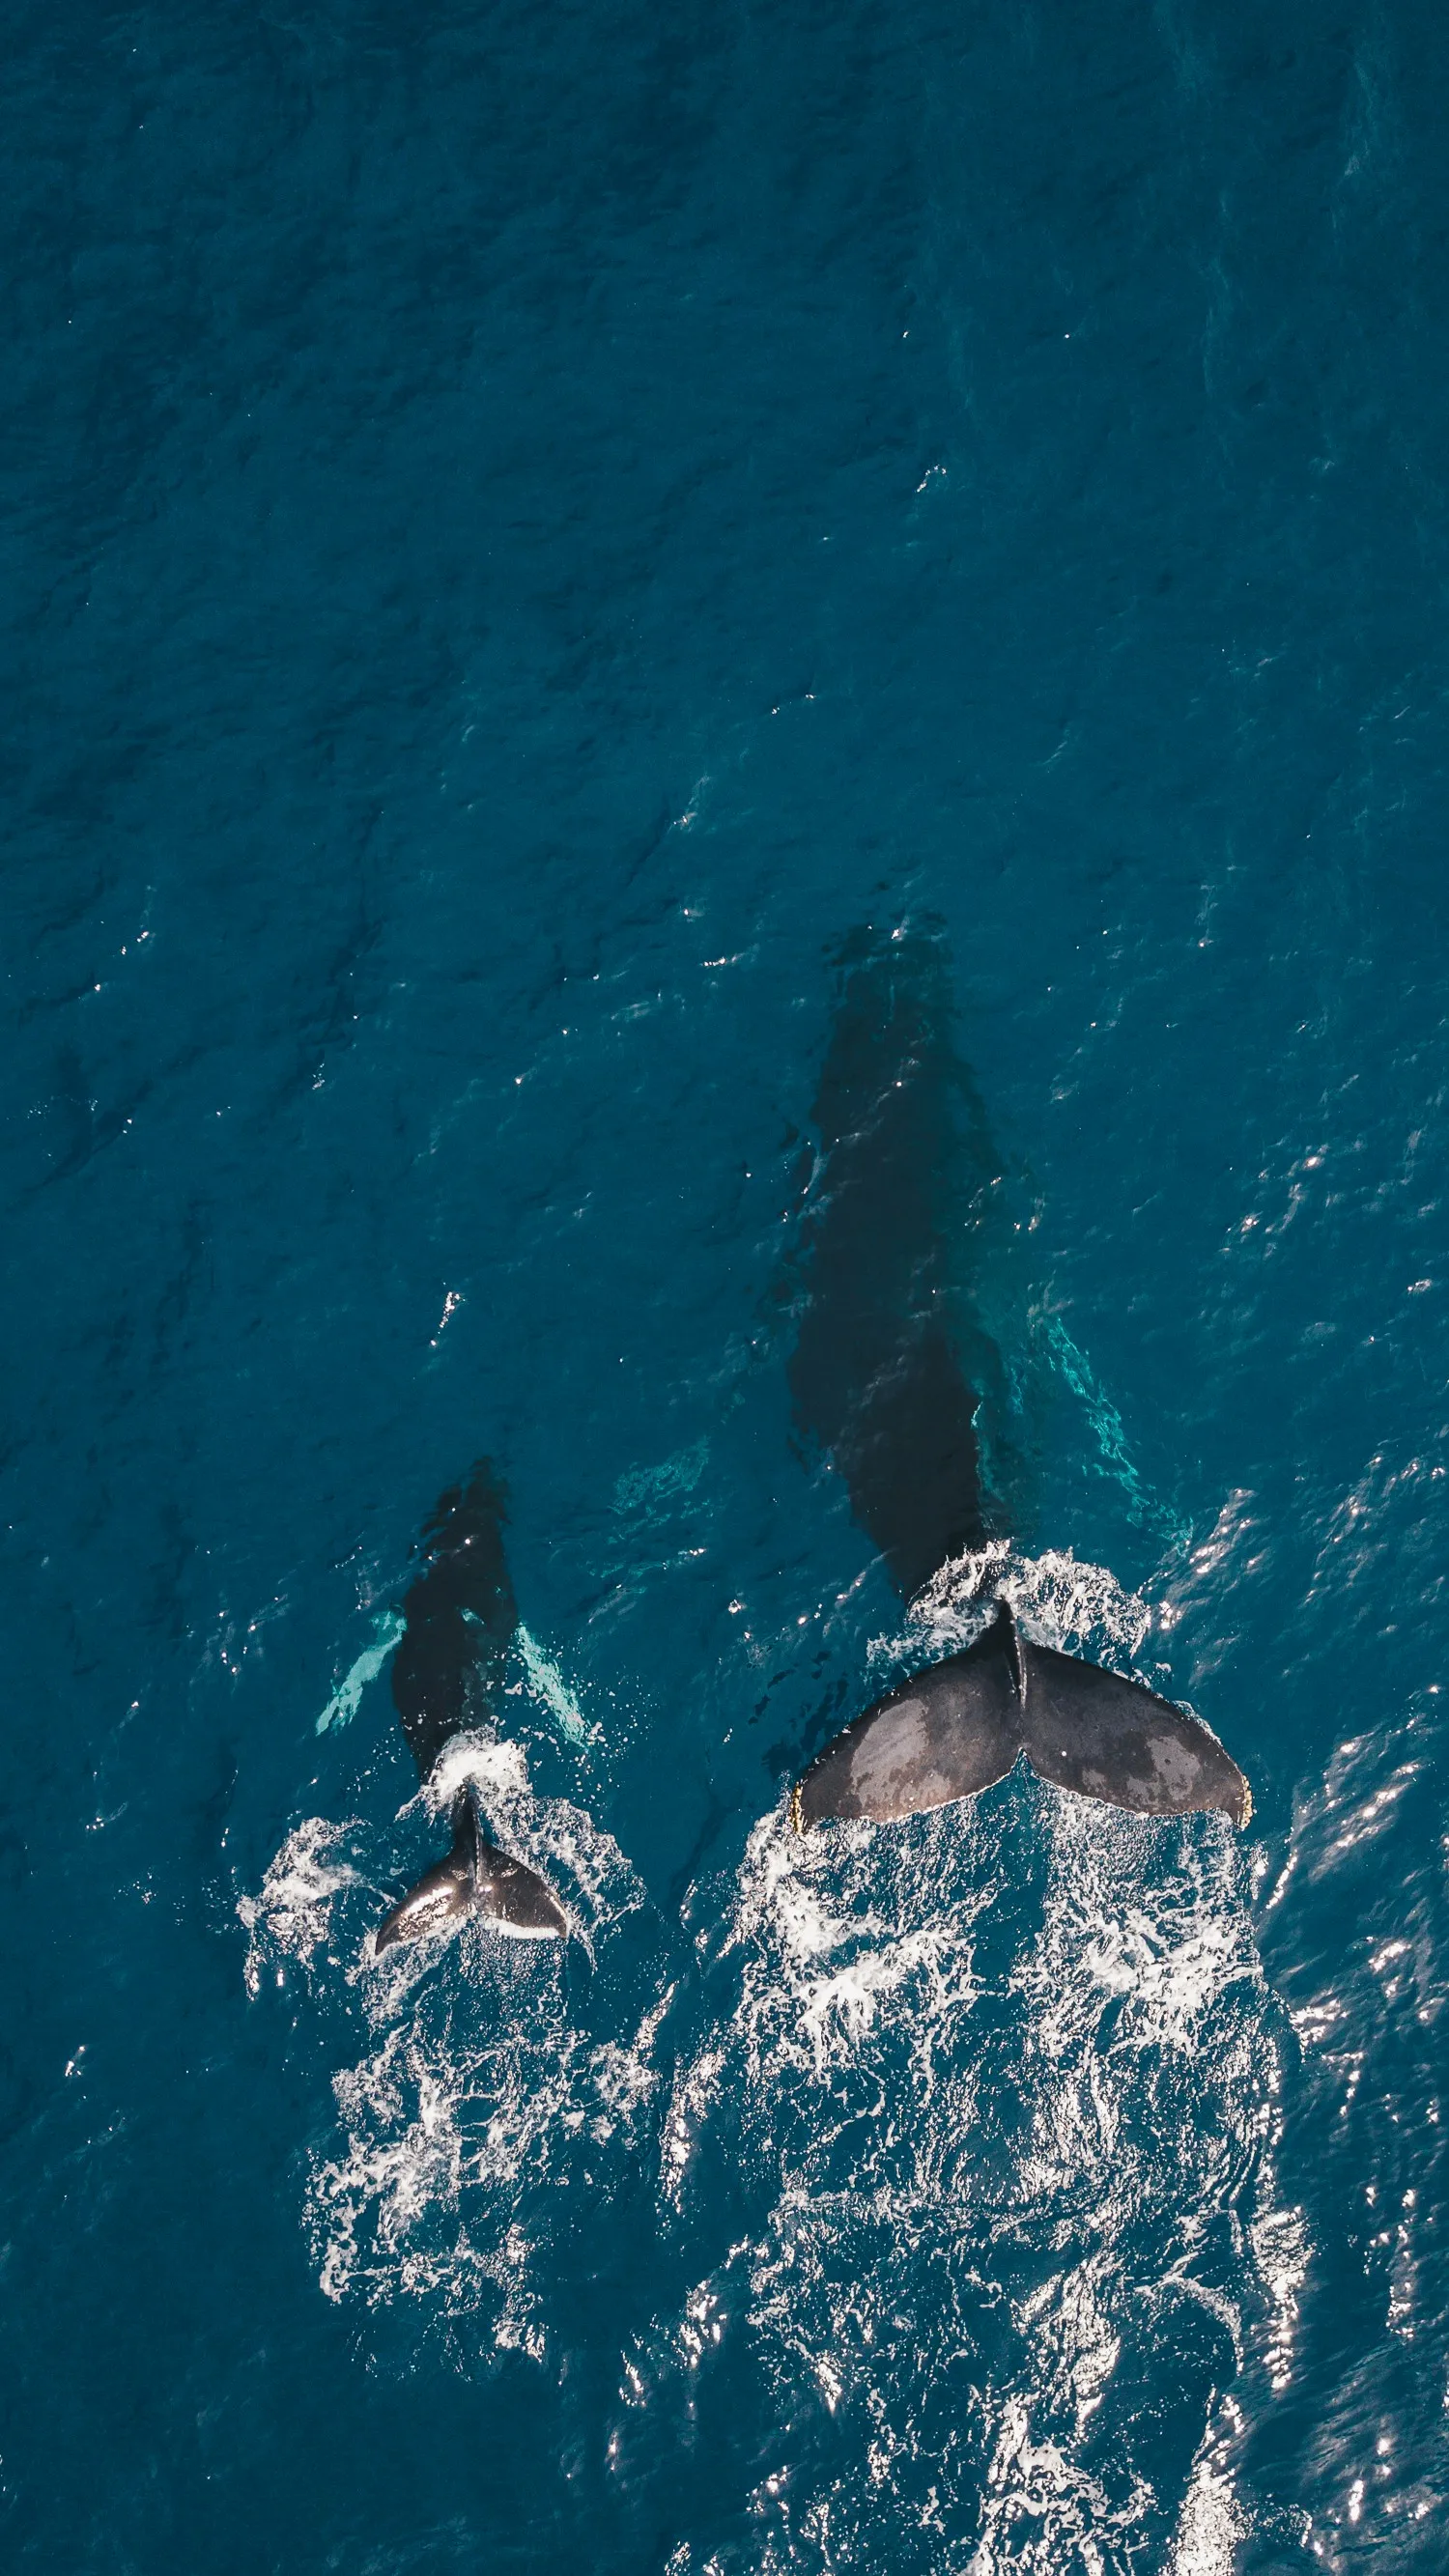 Північноатлантичні кити перебувають на межі зникнення і не можуть розмножуватися